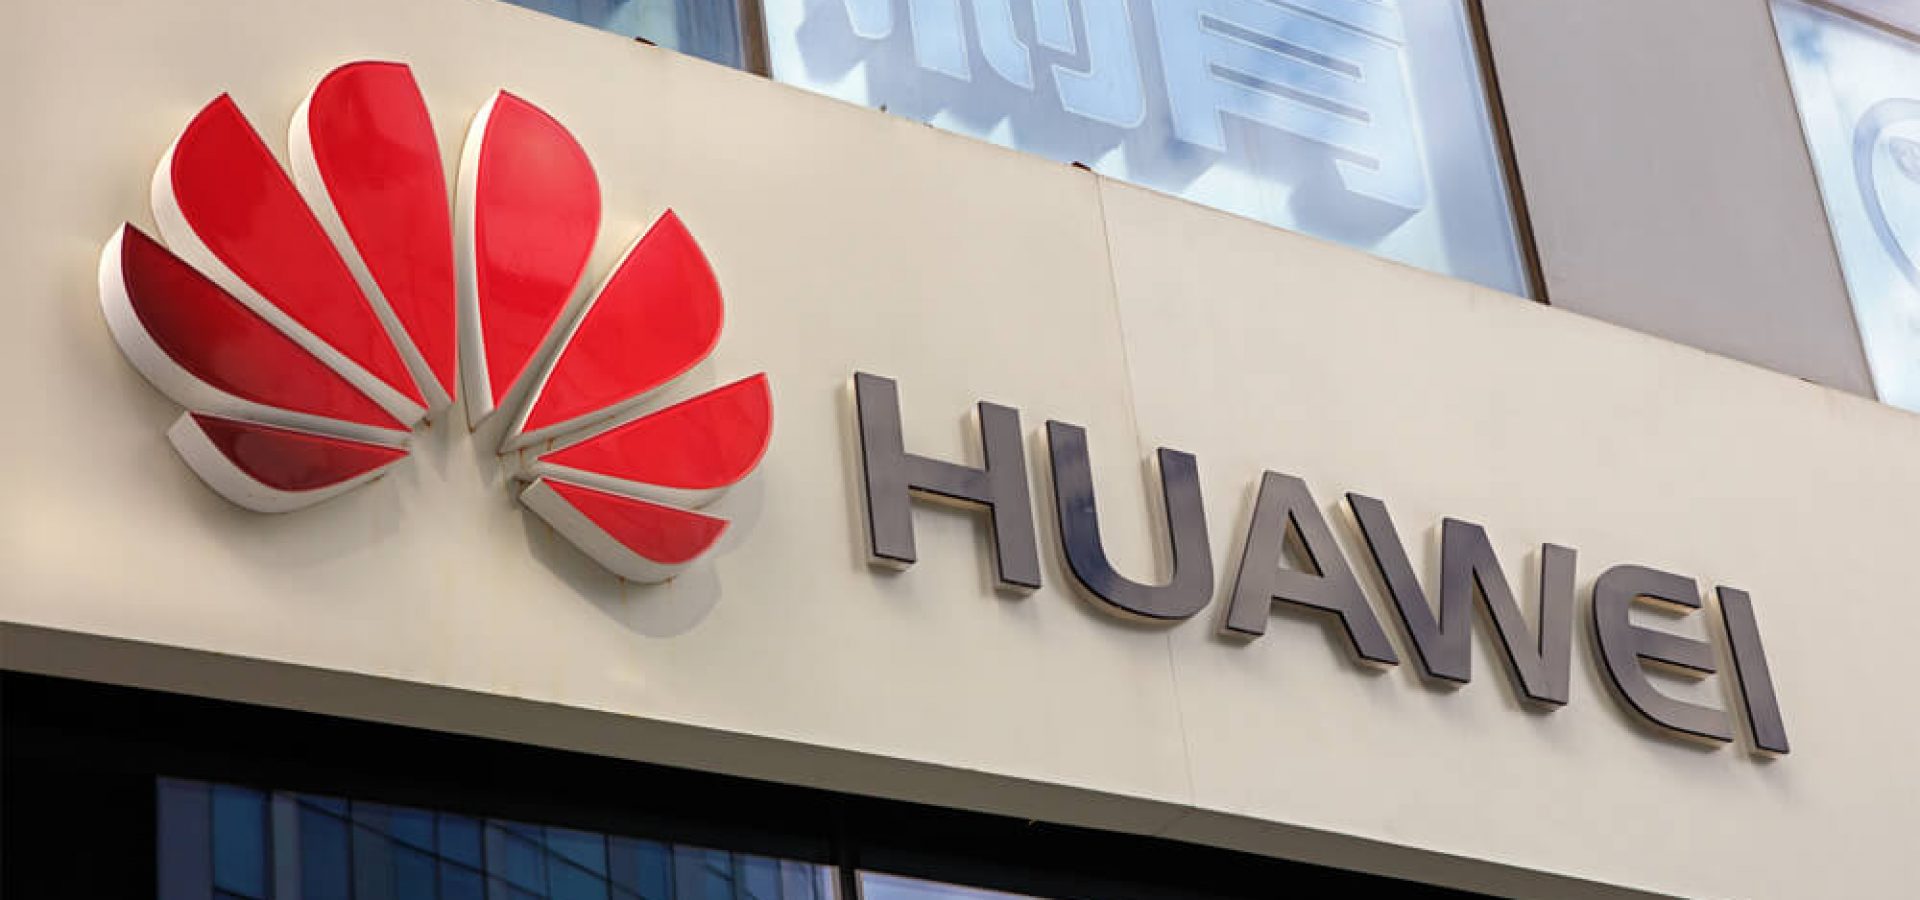 Huawei sign.